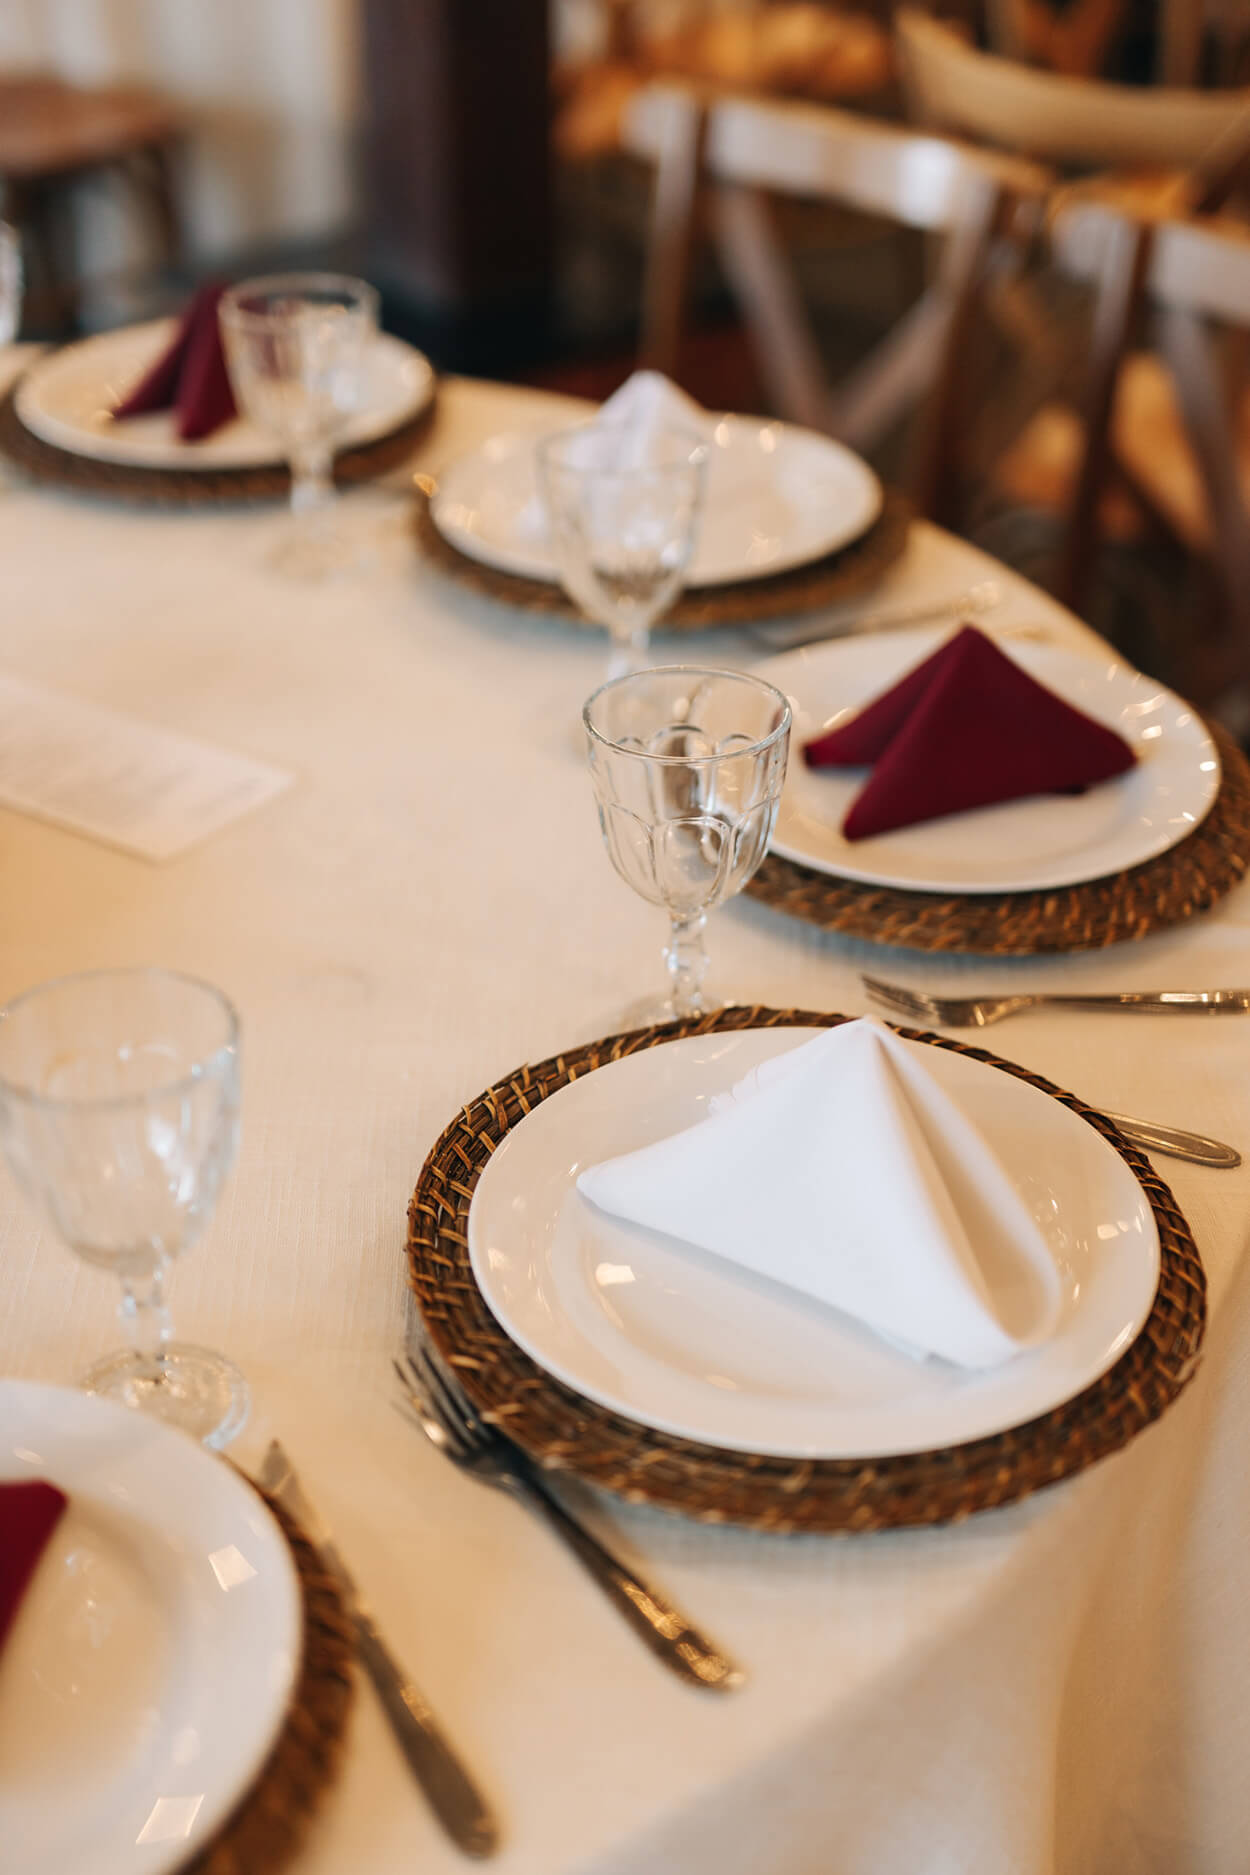 mesa redonda posta com tolaha branca e sousplat de palha com pratos com guardanapos brancos e marsalas